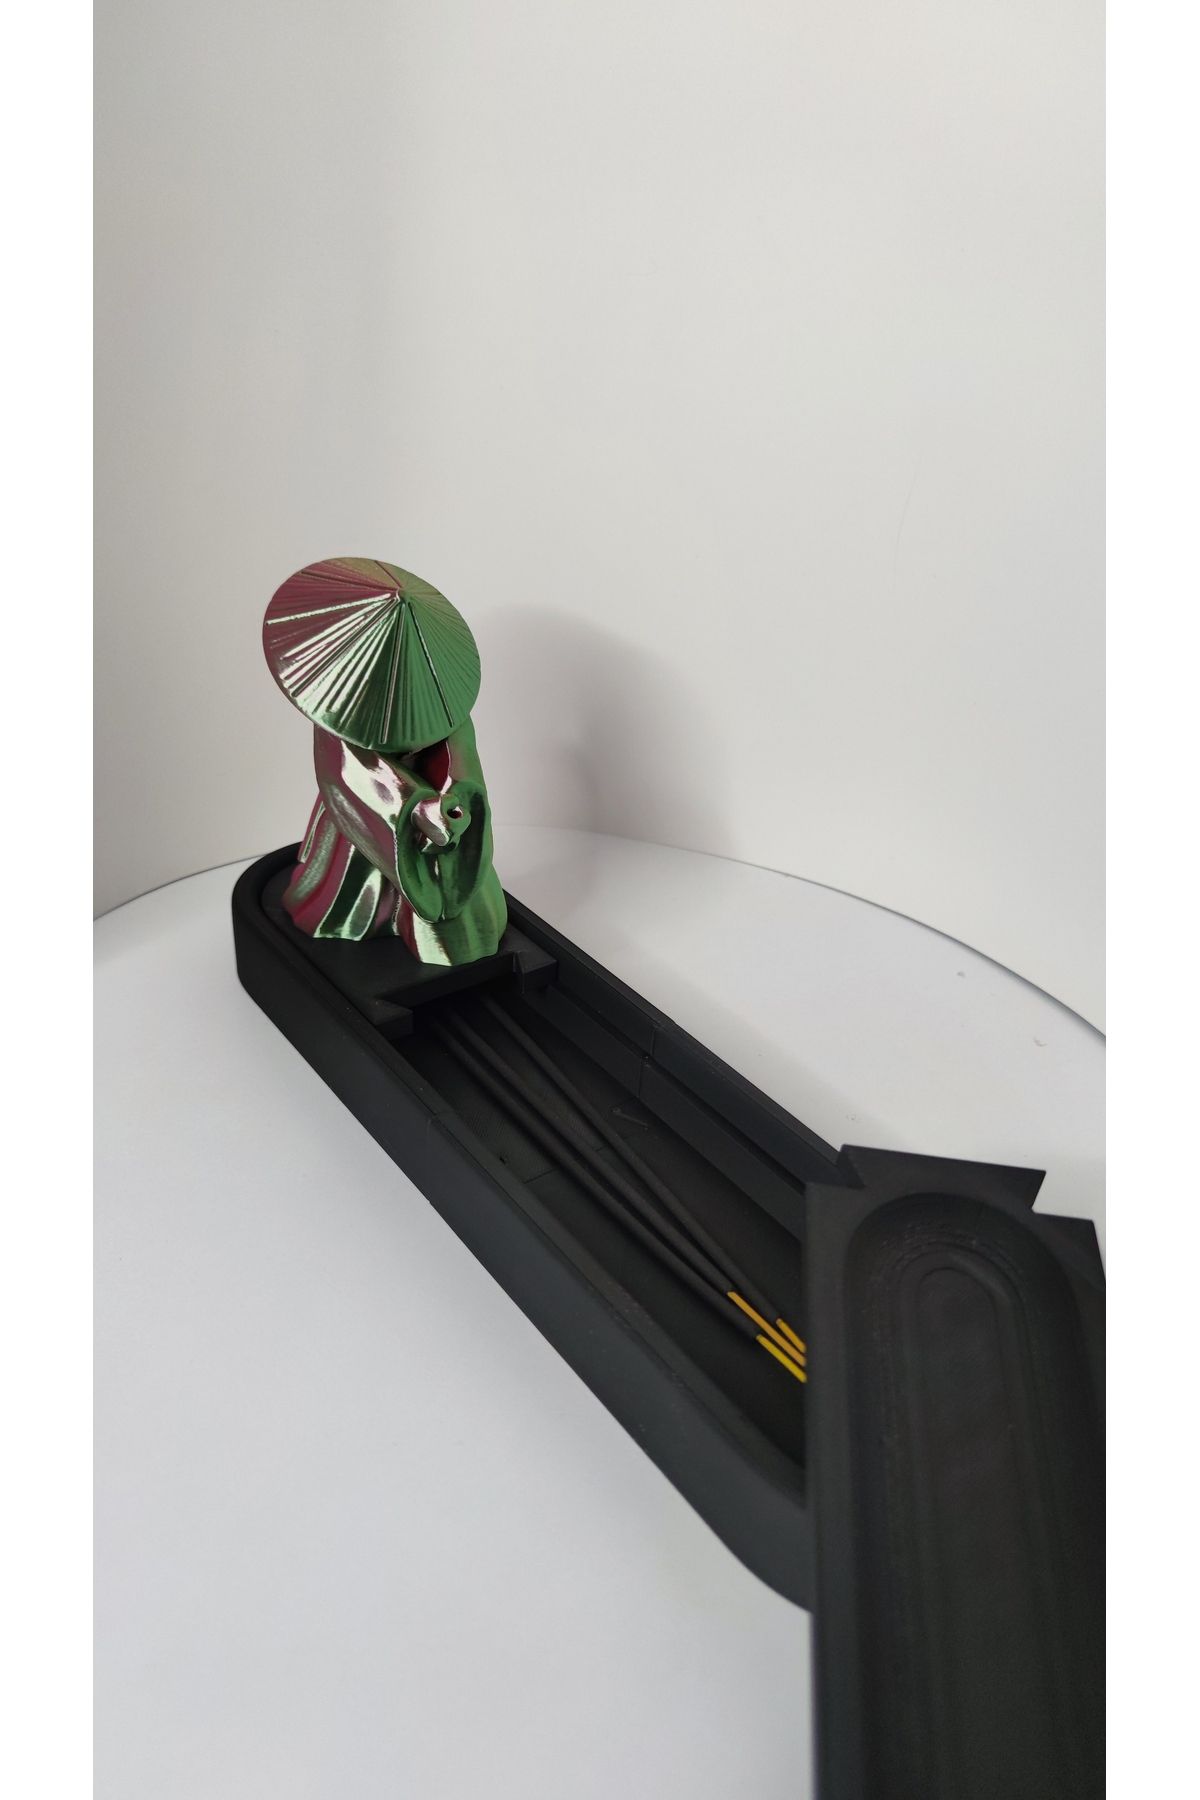 GİZZSTORE HOME Tütsülük, Oda kokusu Tütsülük Samuray Şeklinde Dekoratif Çubuk Tütsülük